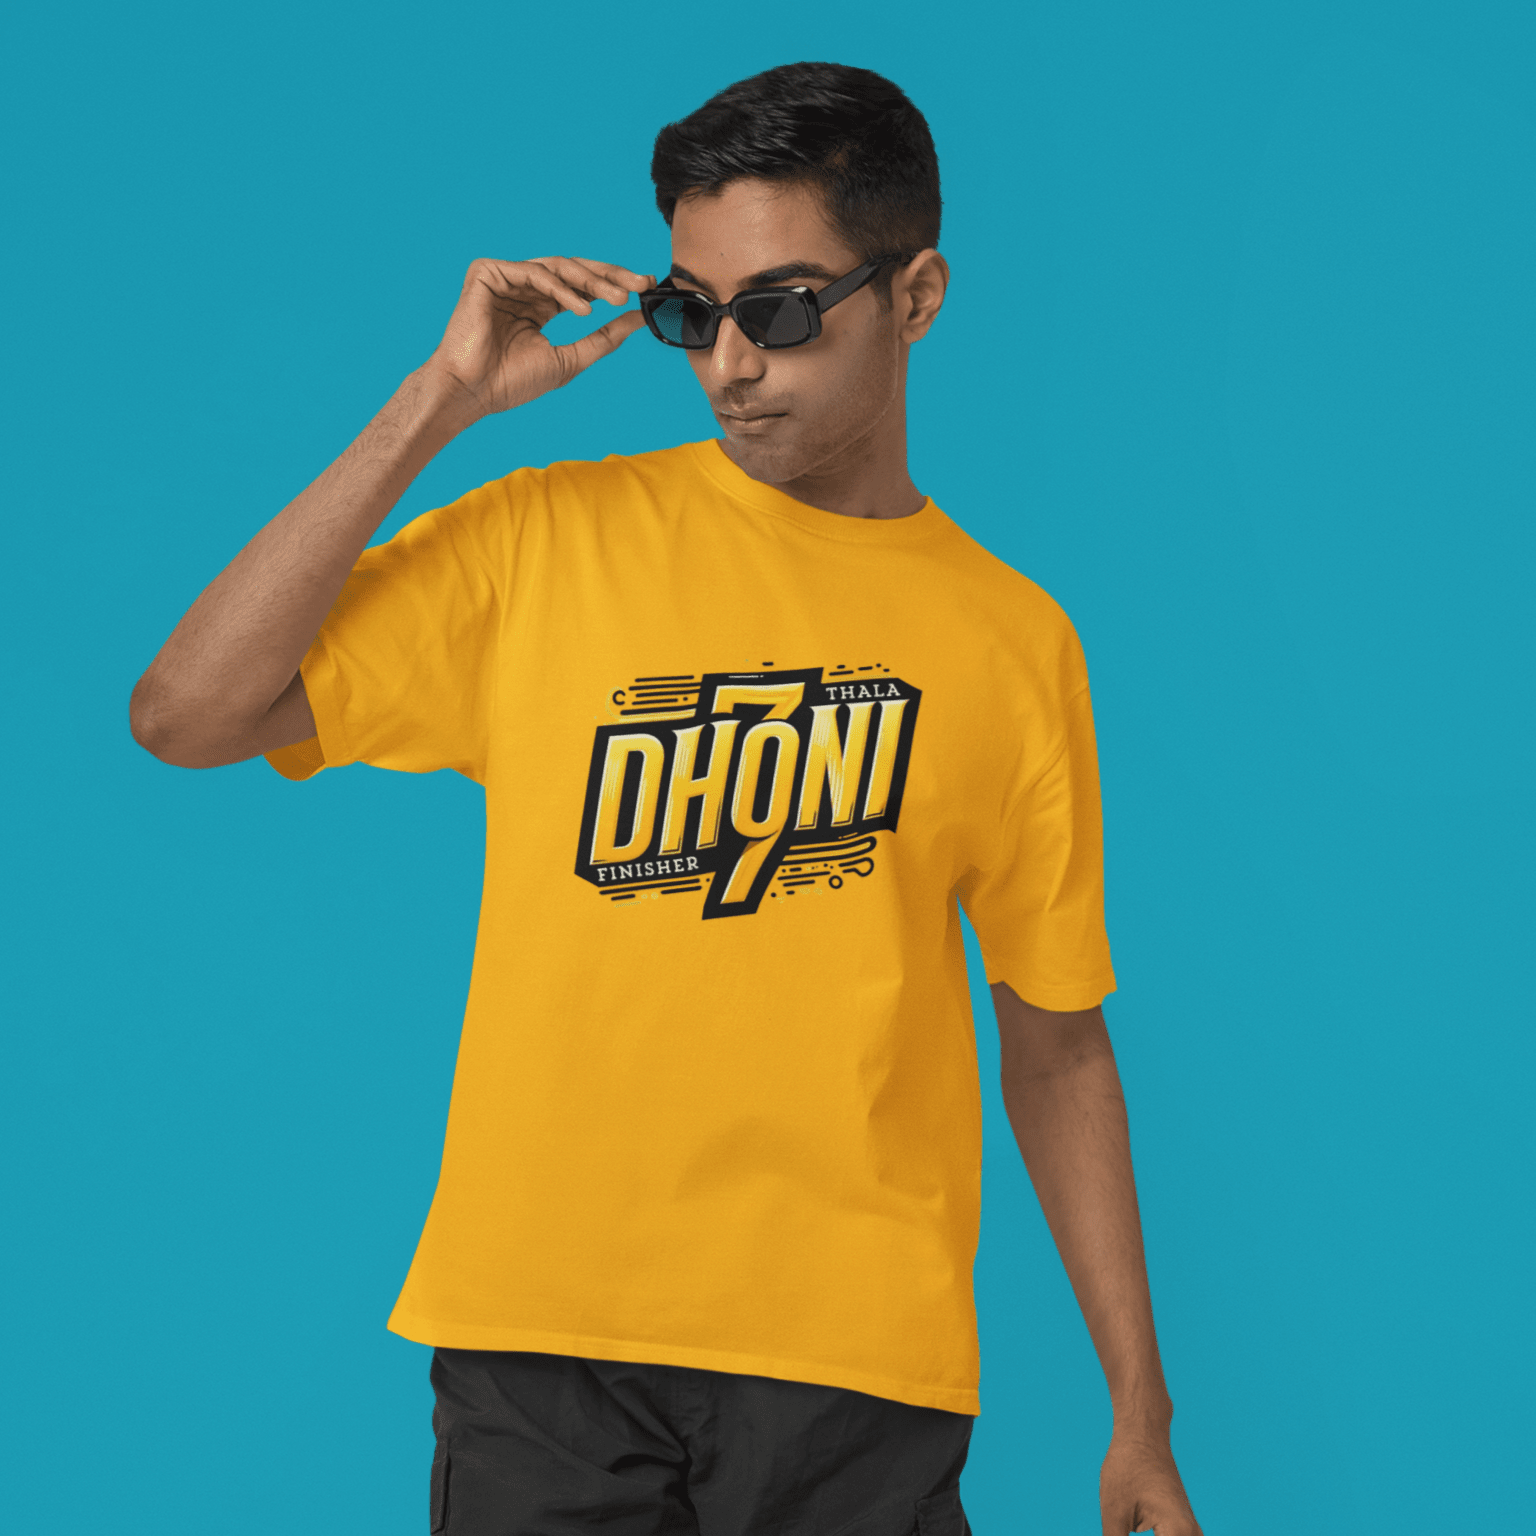 Dhoni T-shirt